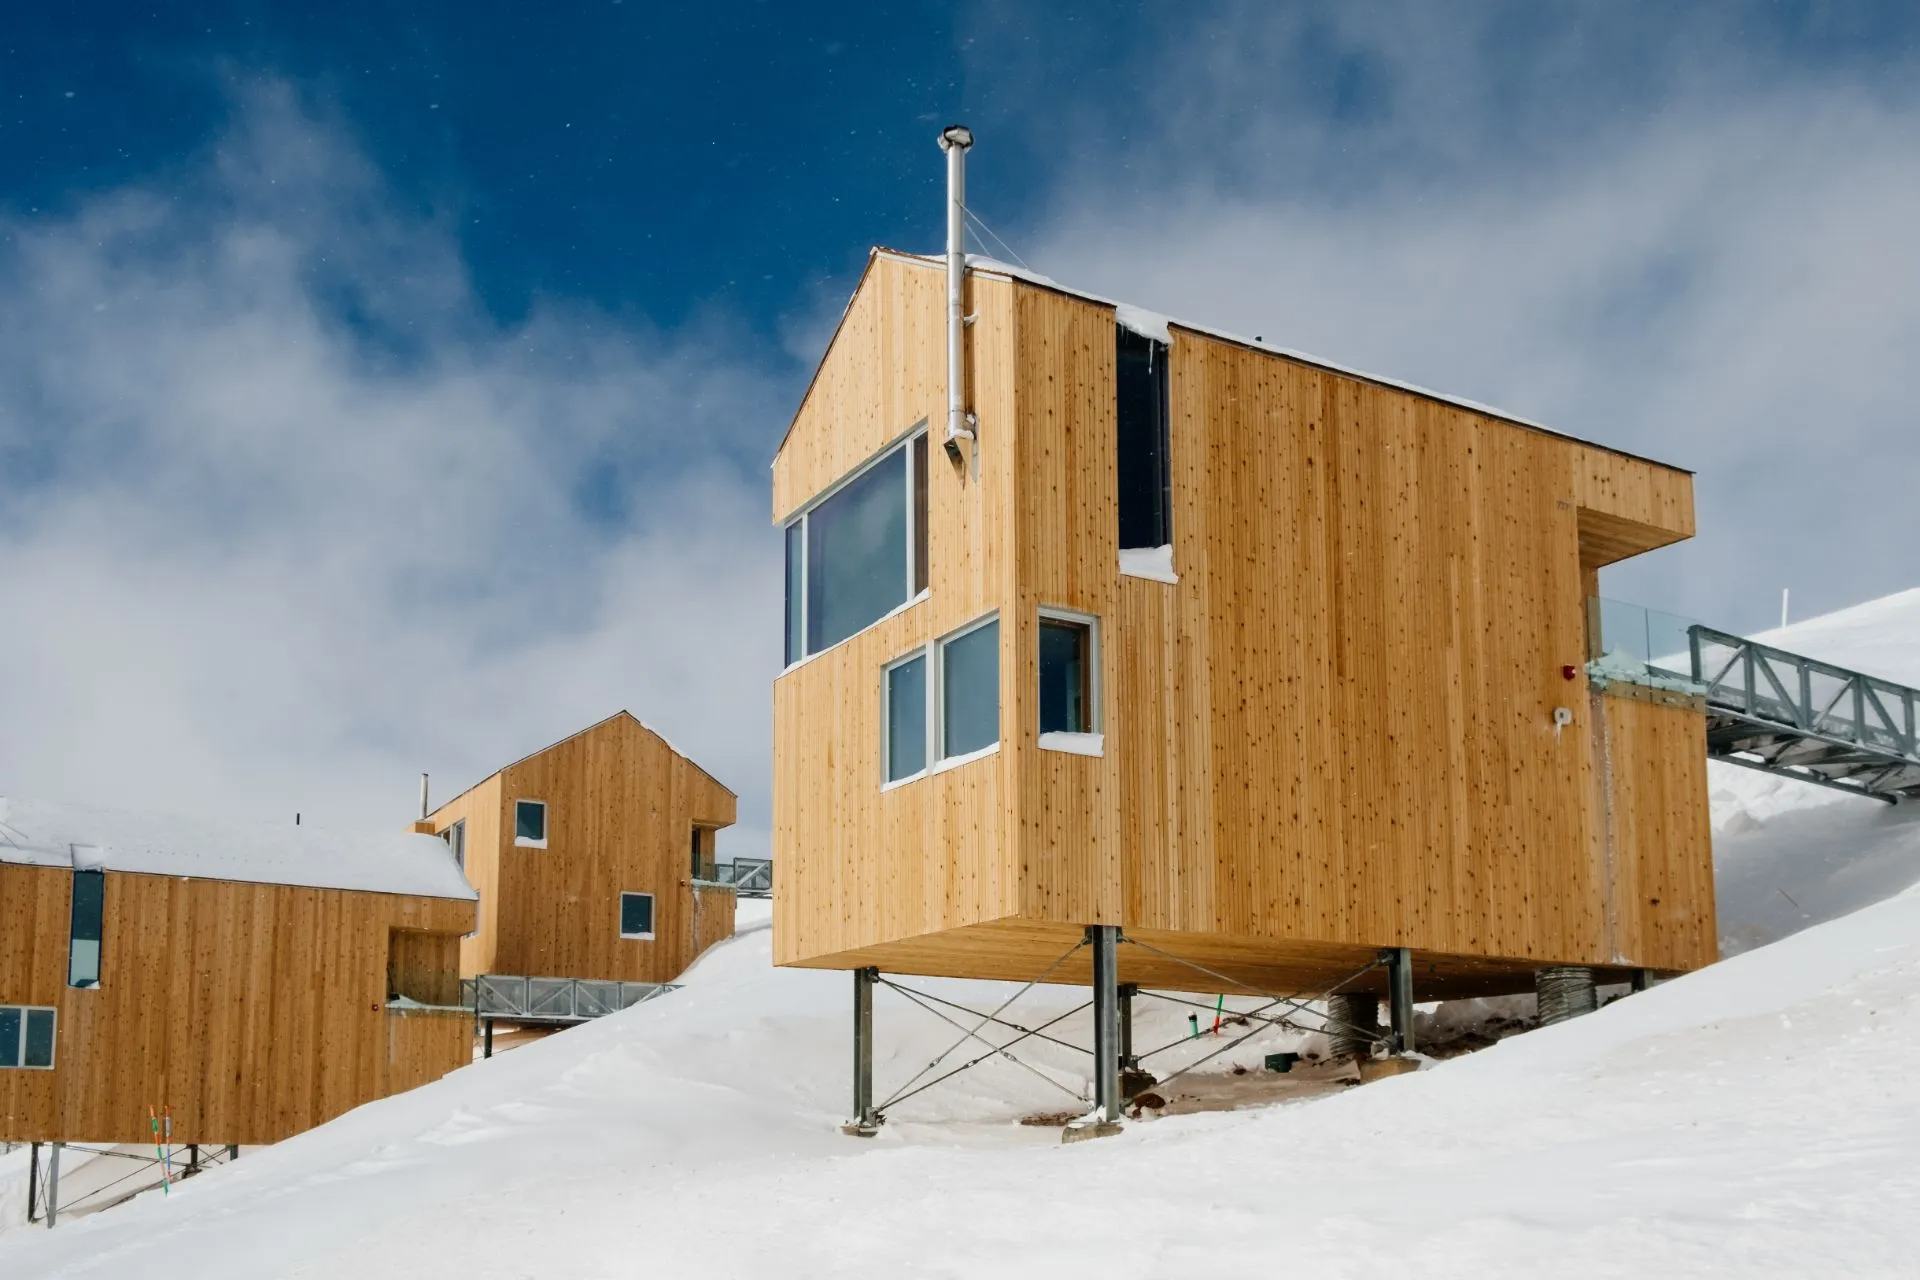 Ριντ Χέιστινγκς: Ο ιδρυτής του Netflix μόλις αγόρασε το μεγαλύτερο χιονοδρομικό κέντρο